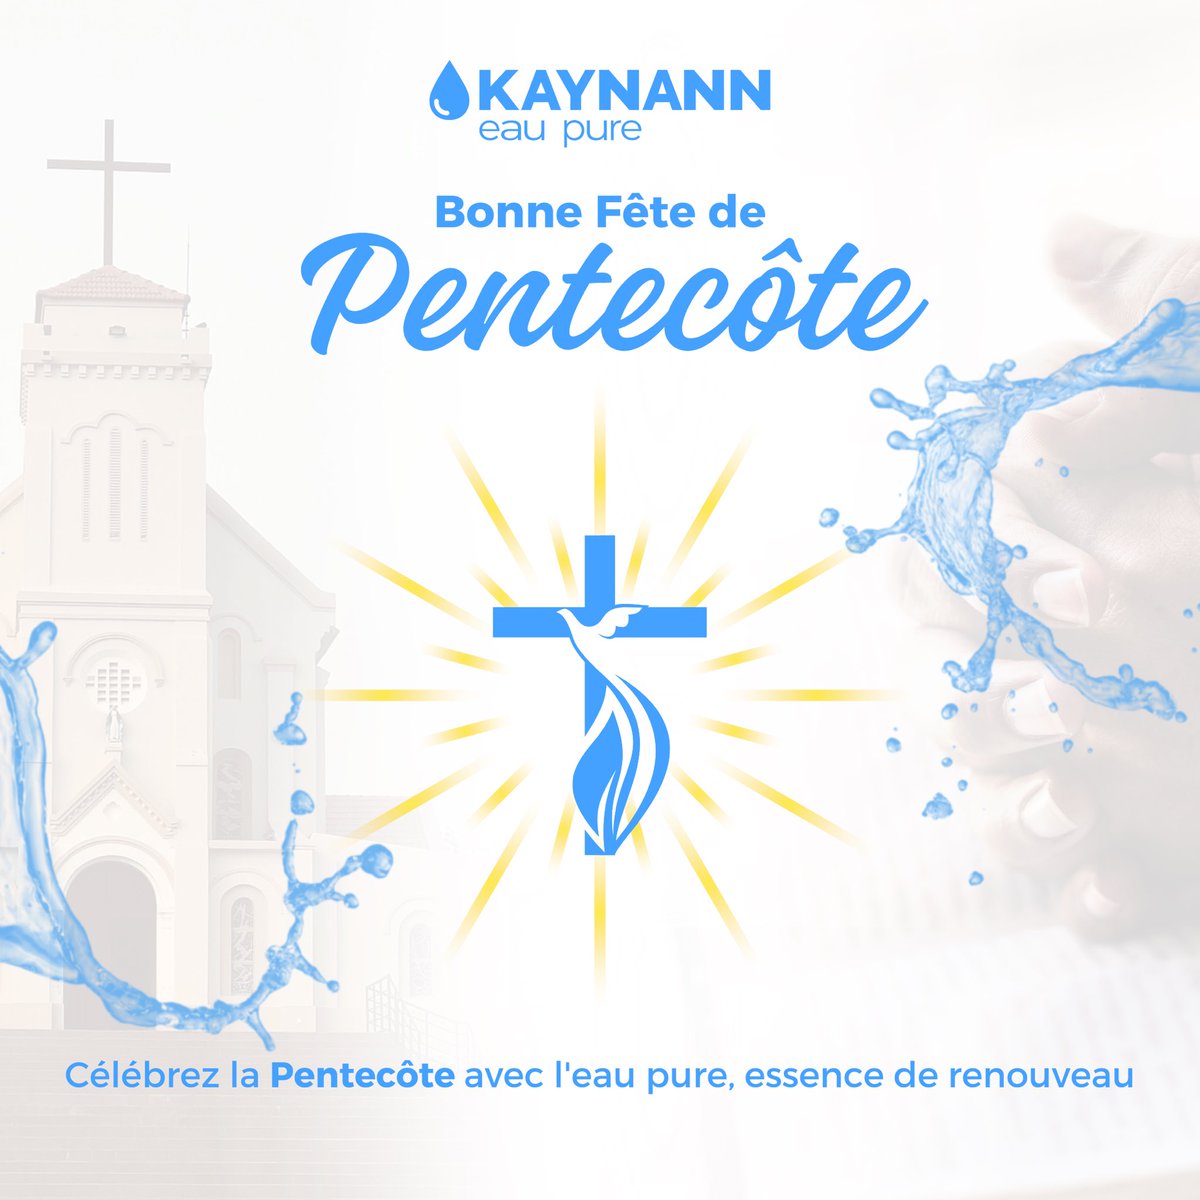 Pentecôte, un temps pour le renouveau, la paix et l’unité. 

Bonne fête à la Communauté Chrétienne 🙏🏽 

#Pentecôte #EspritSaint #FêteReligieuse